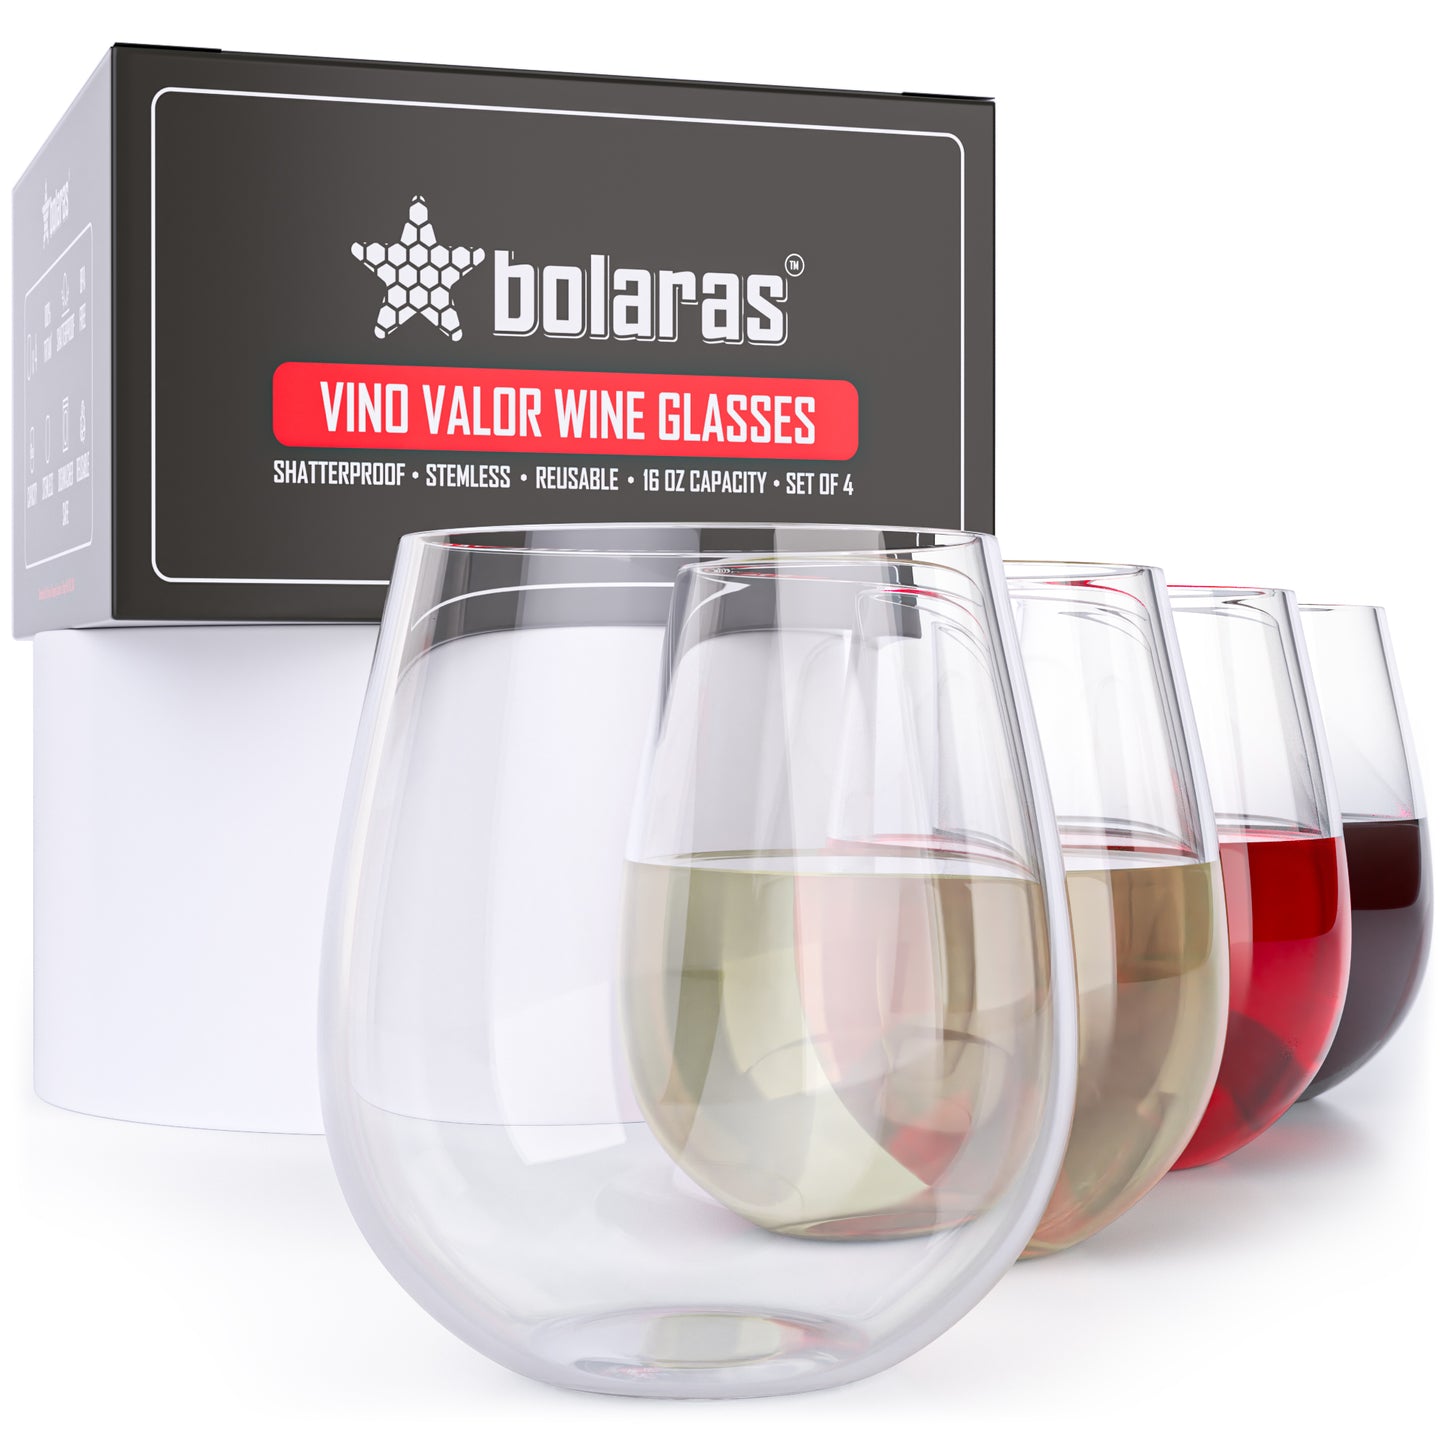 Bolaras Vino Valor Wine Glasses (Set of 4)